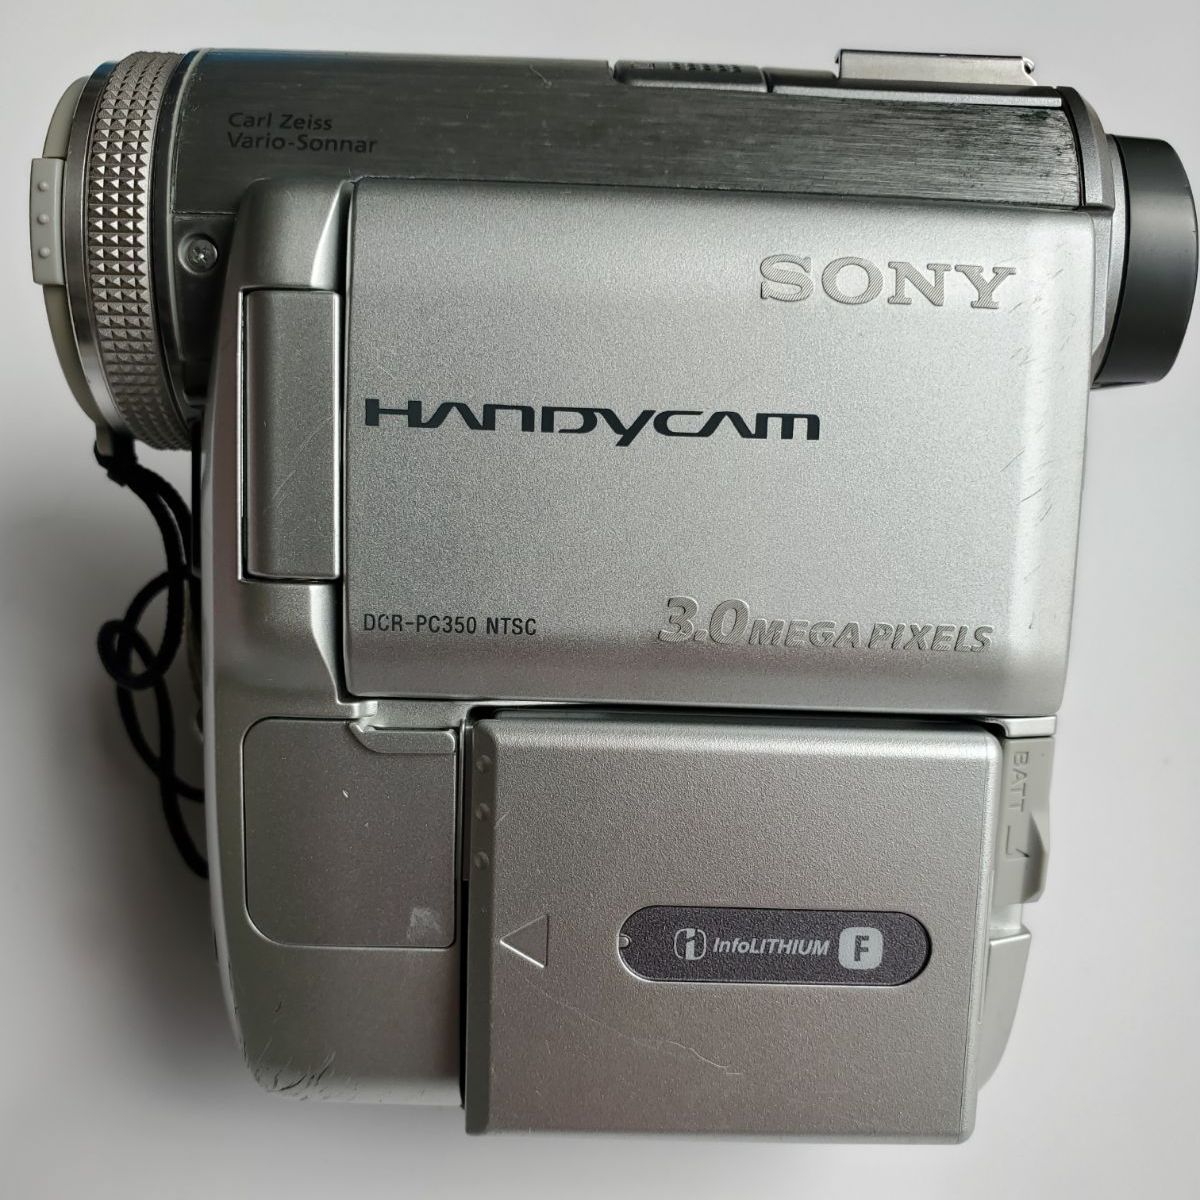 SONY ビデオカメラ SONY DCR-PC350(S) - 雑貨、古本、マンガ、なんでも